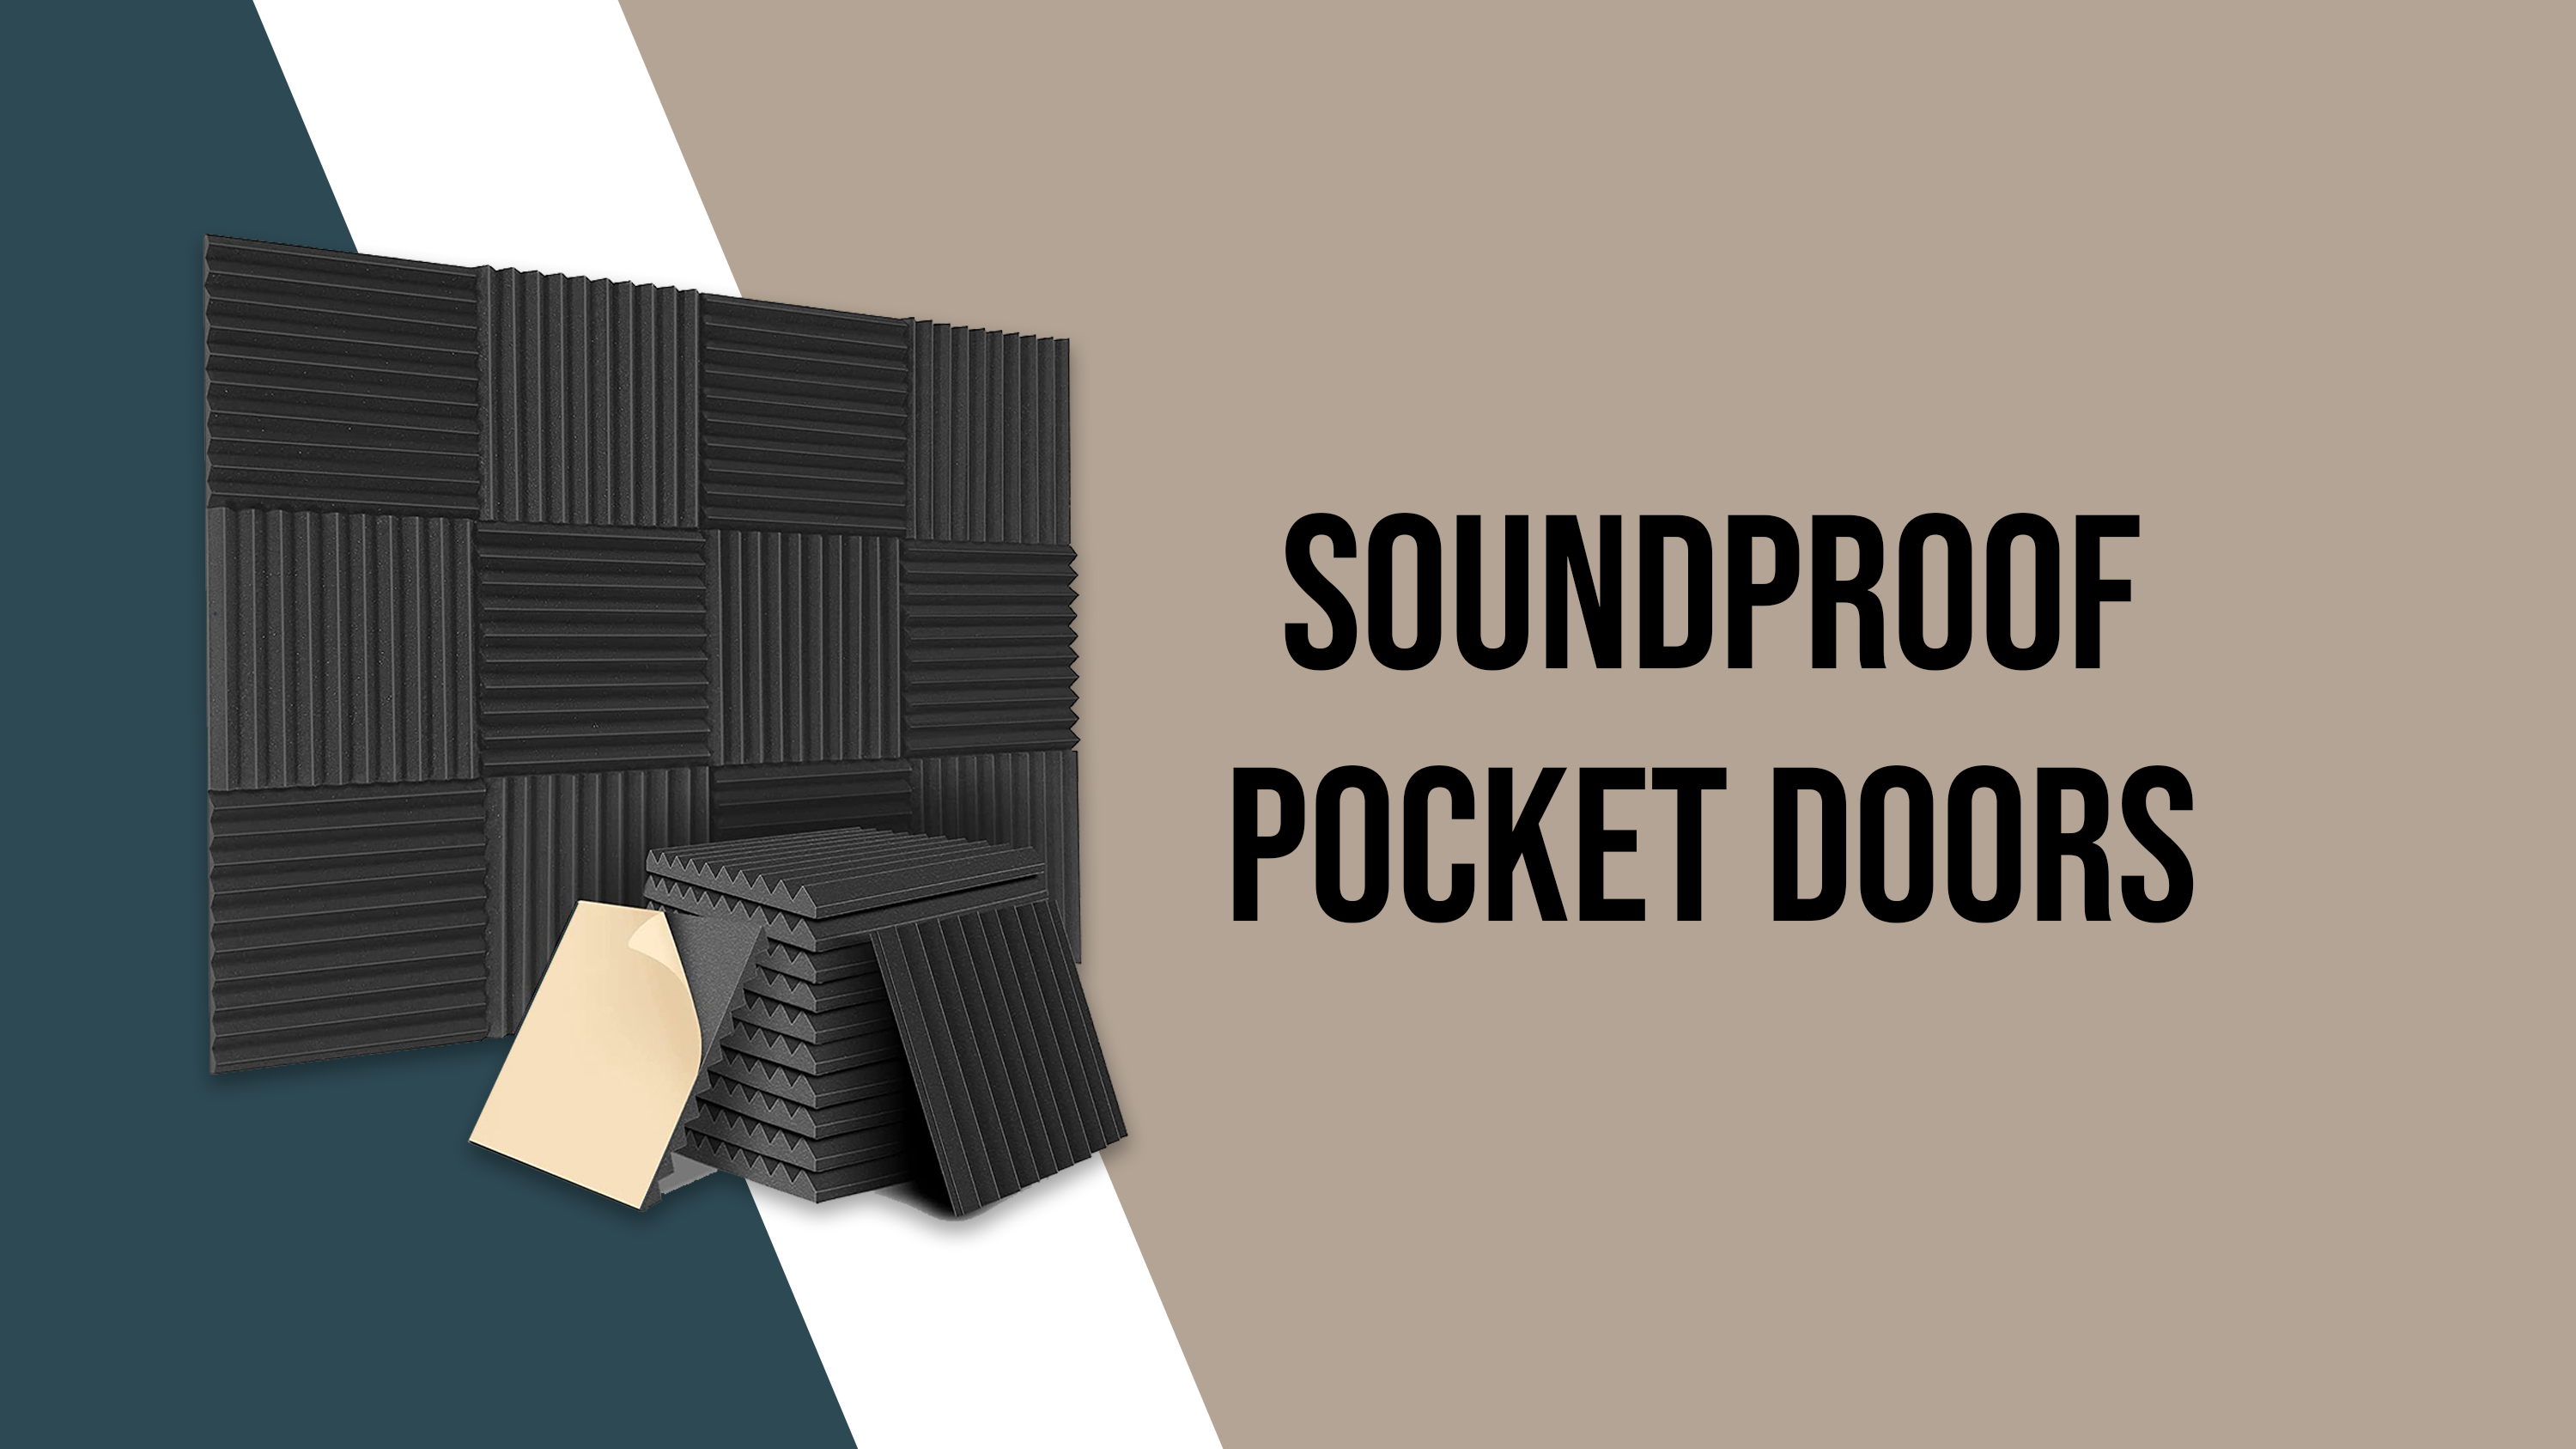 Soundproof pocket doors